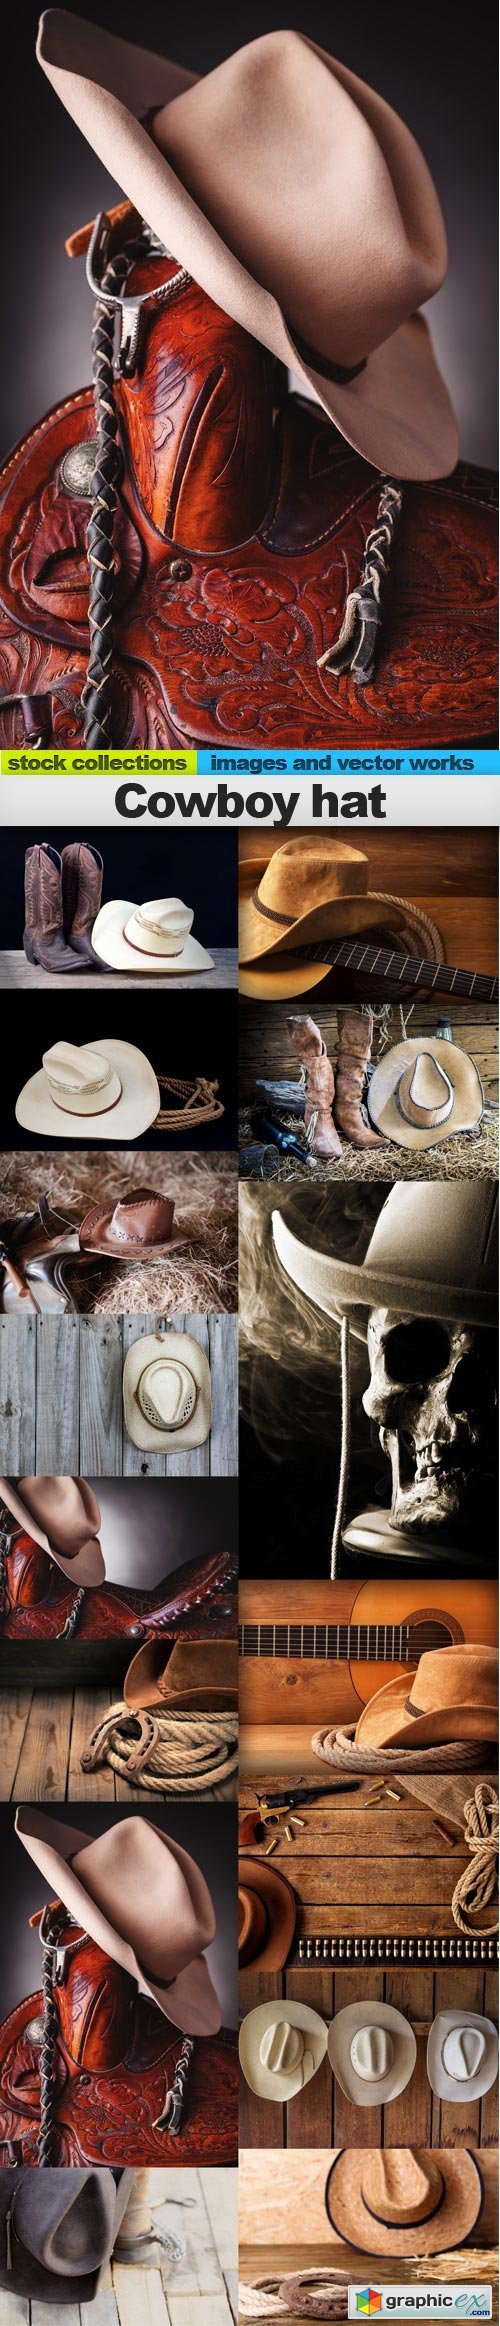 Cowboy hat, 15 x UHQ JPEG